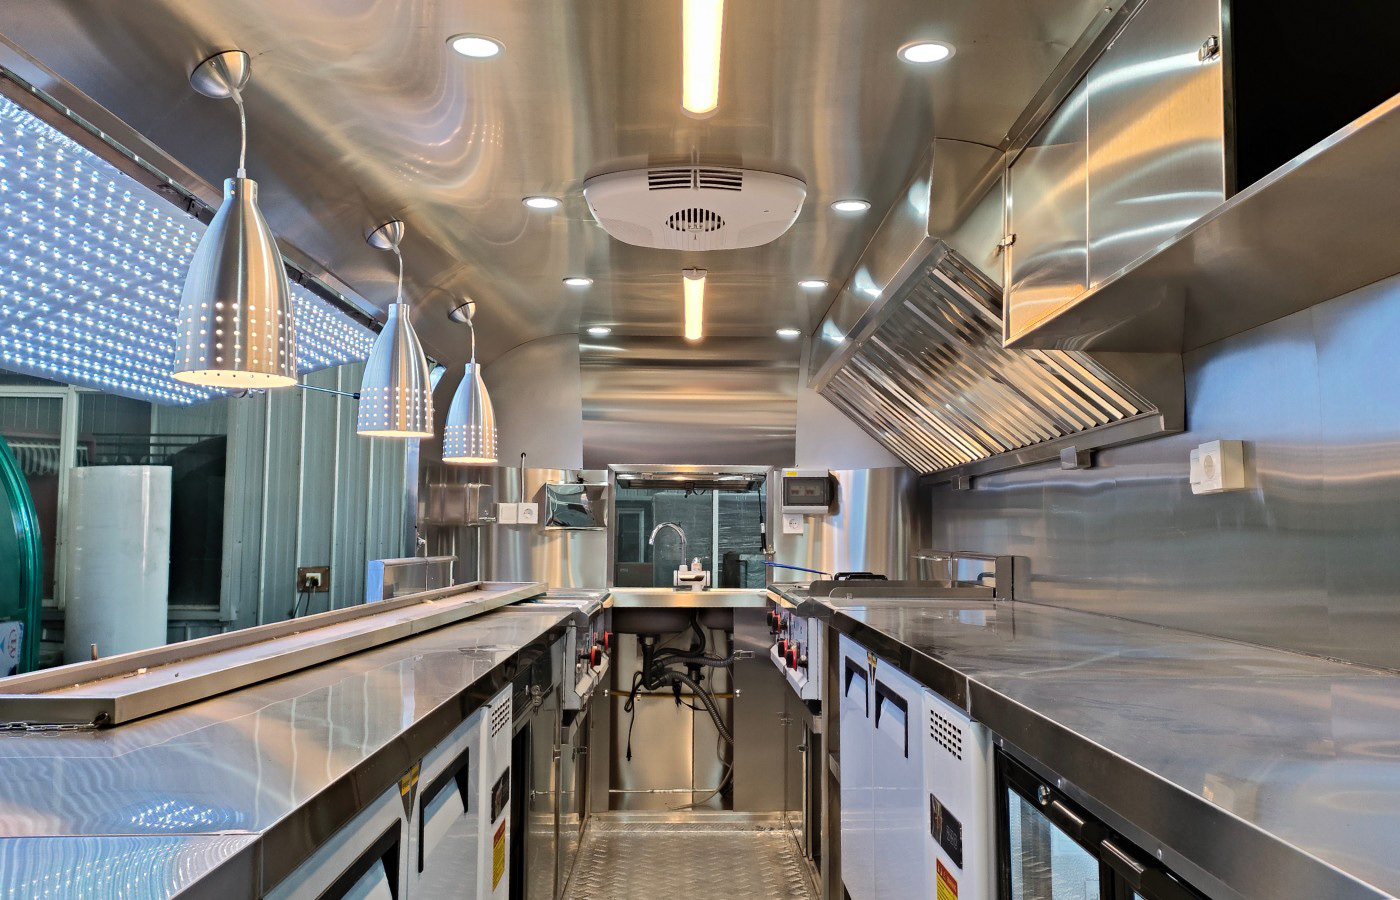 Airstream Food Trailer Interior